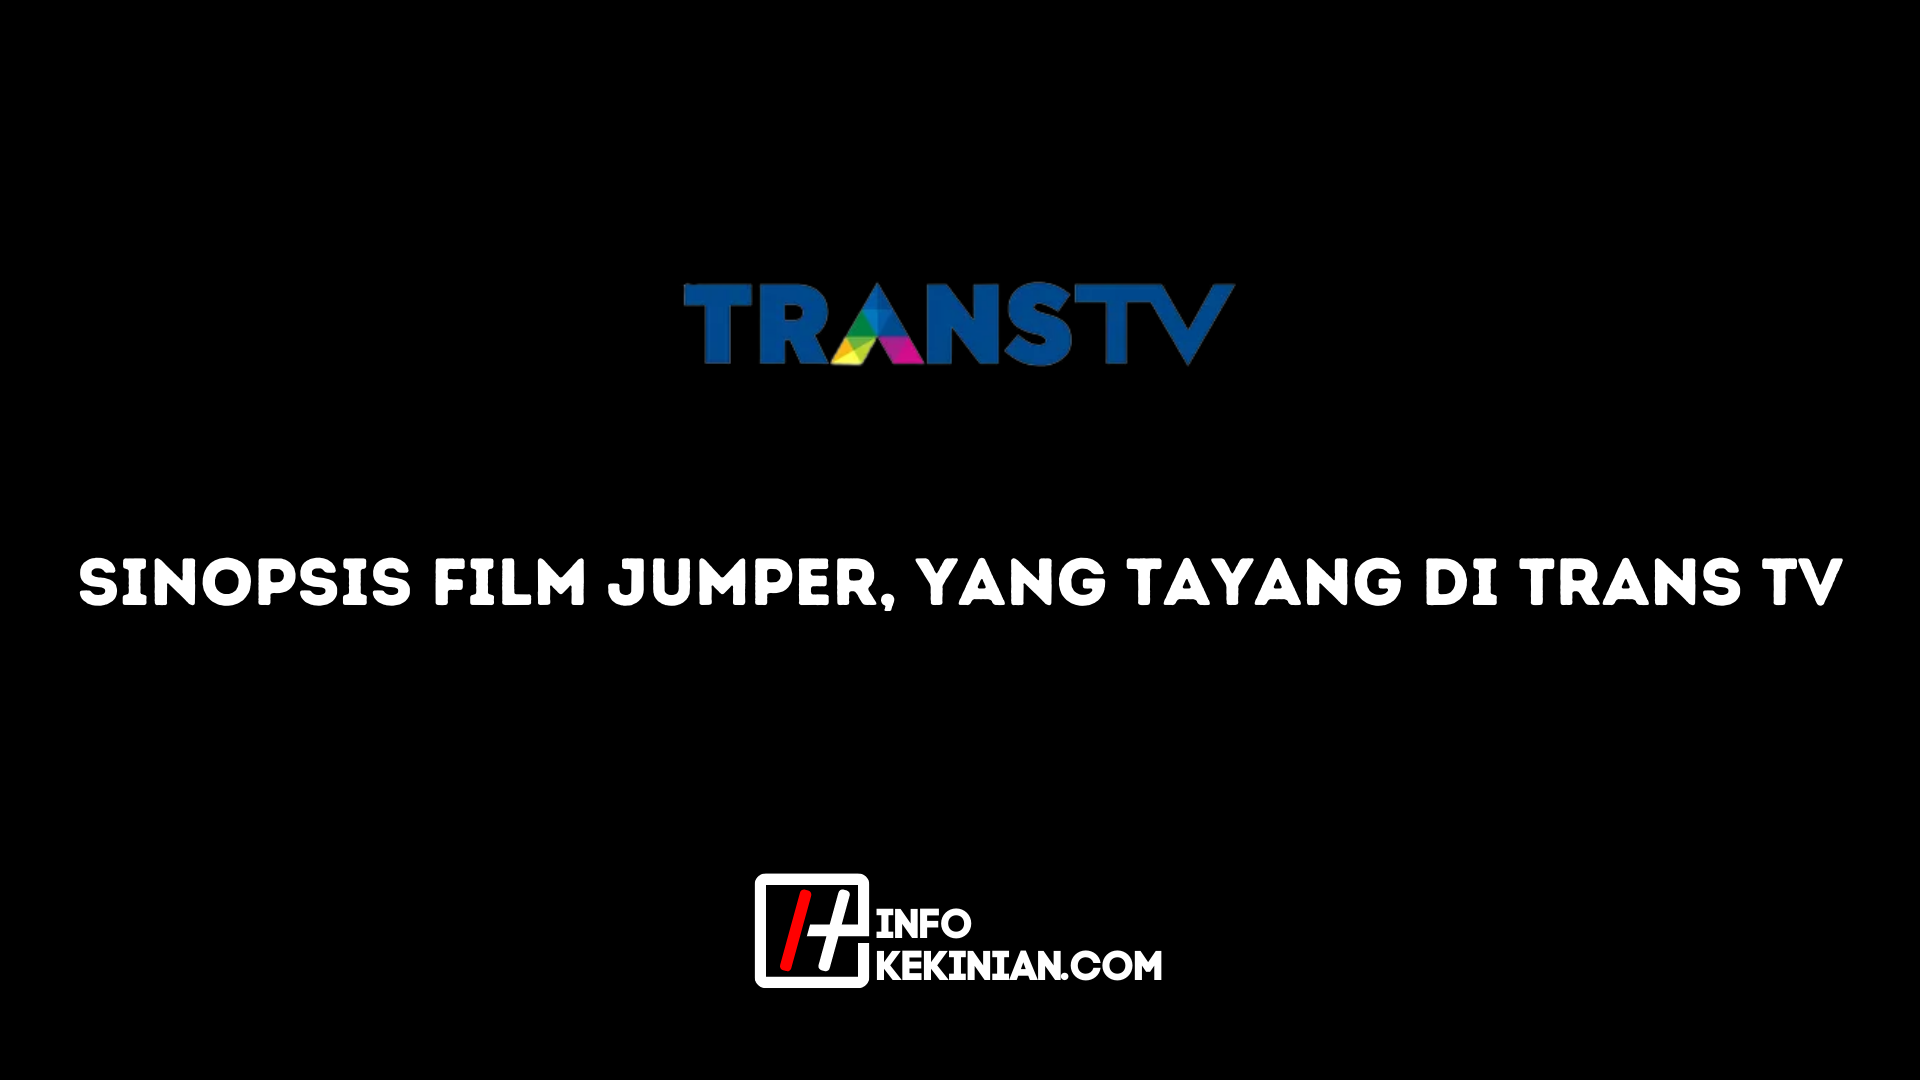 Zusammenfassung des Jumper-Films, der auf Trans Tv ausgestrahlt wird